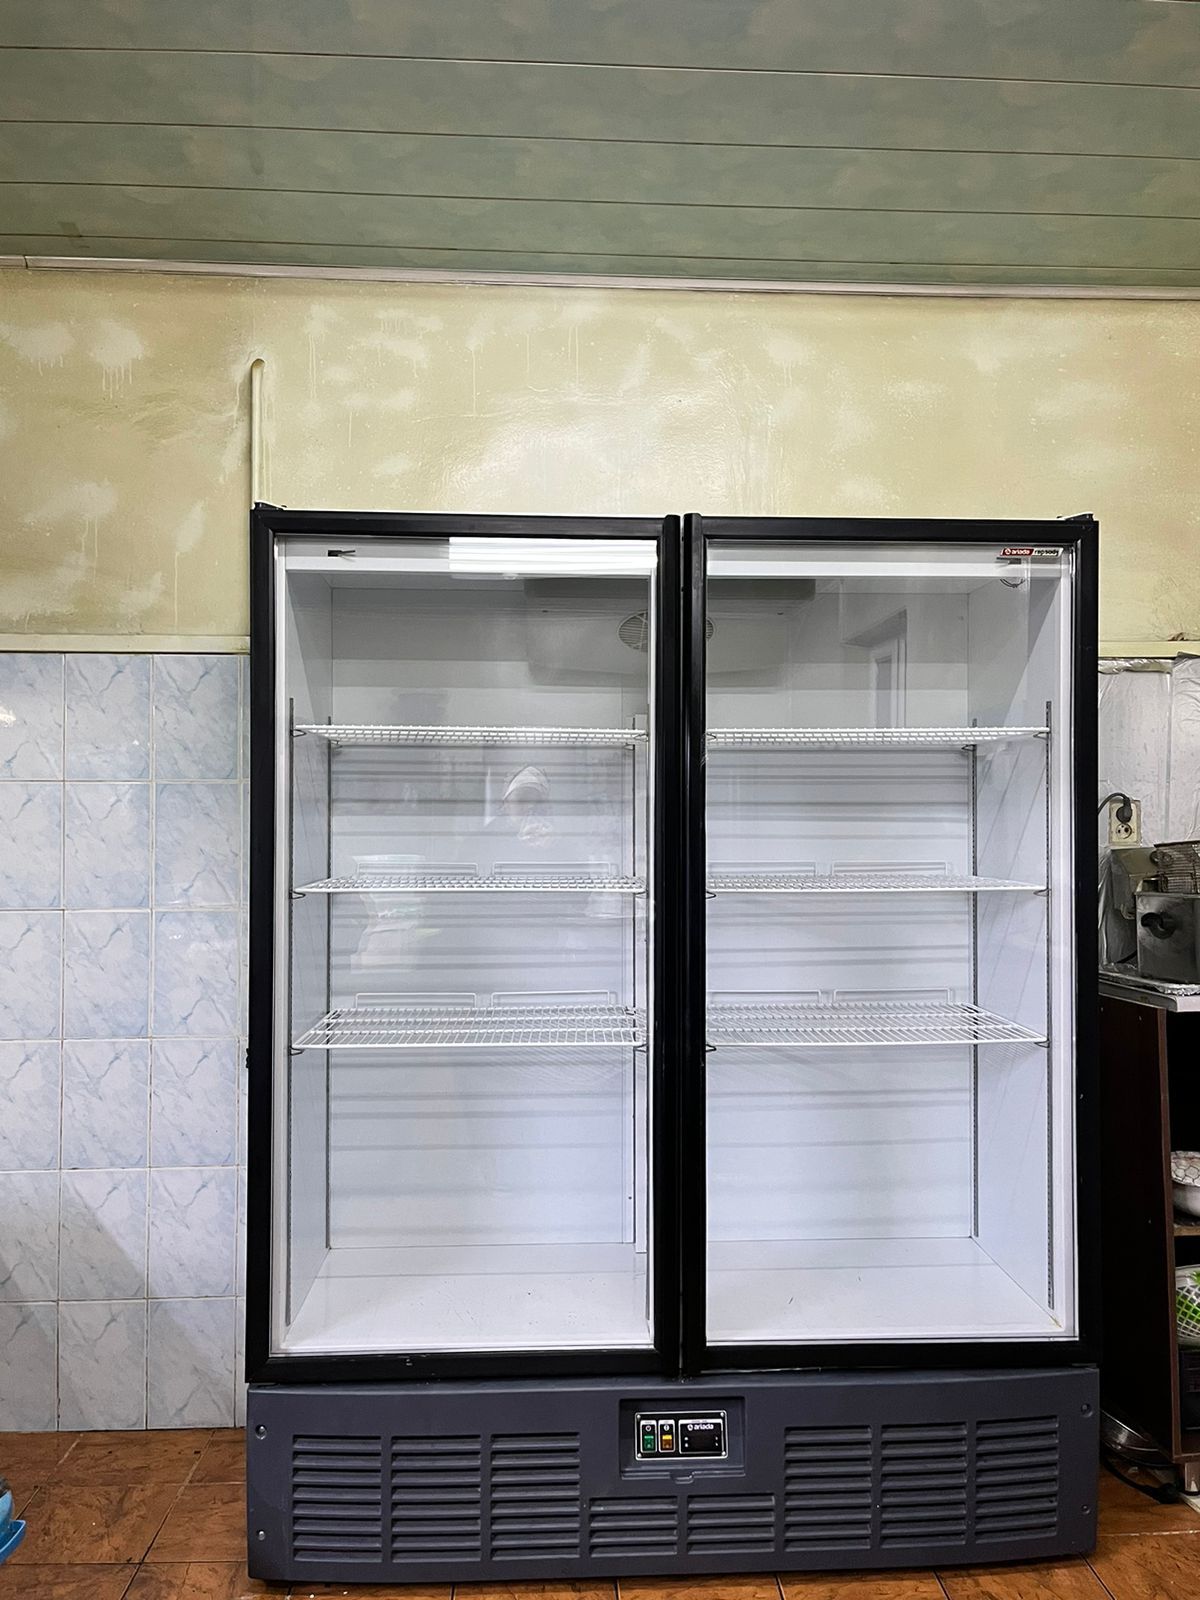 Продается холодильник профисиональный в отличном срстояние